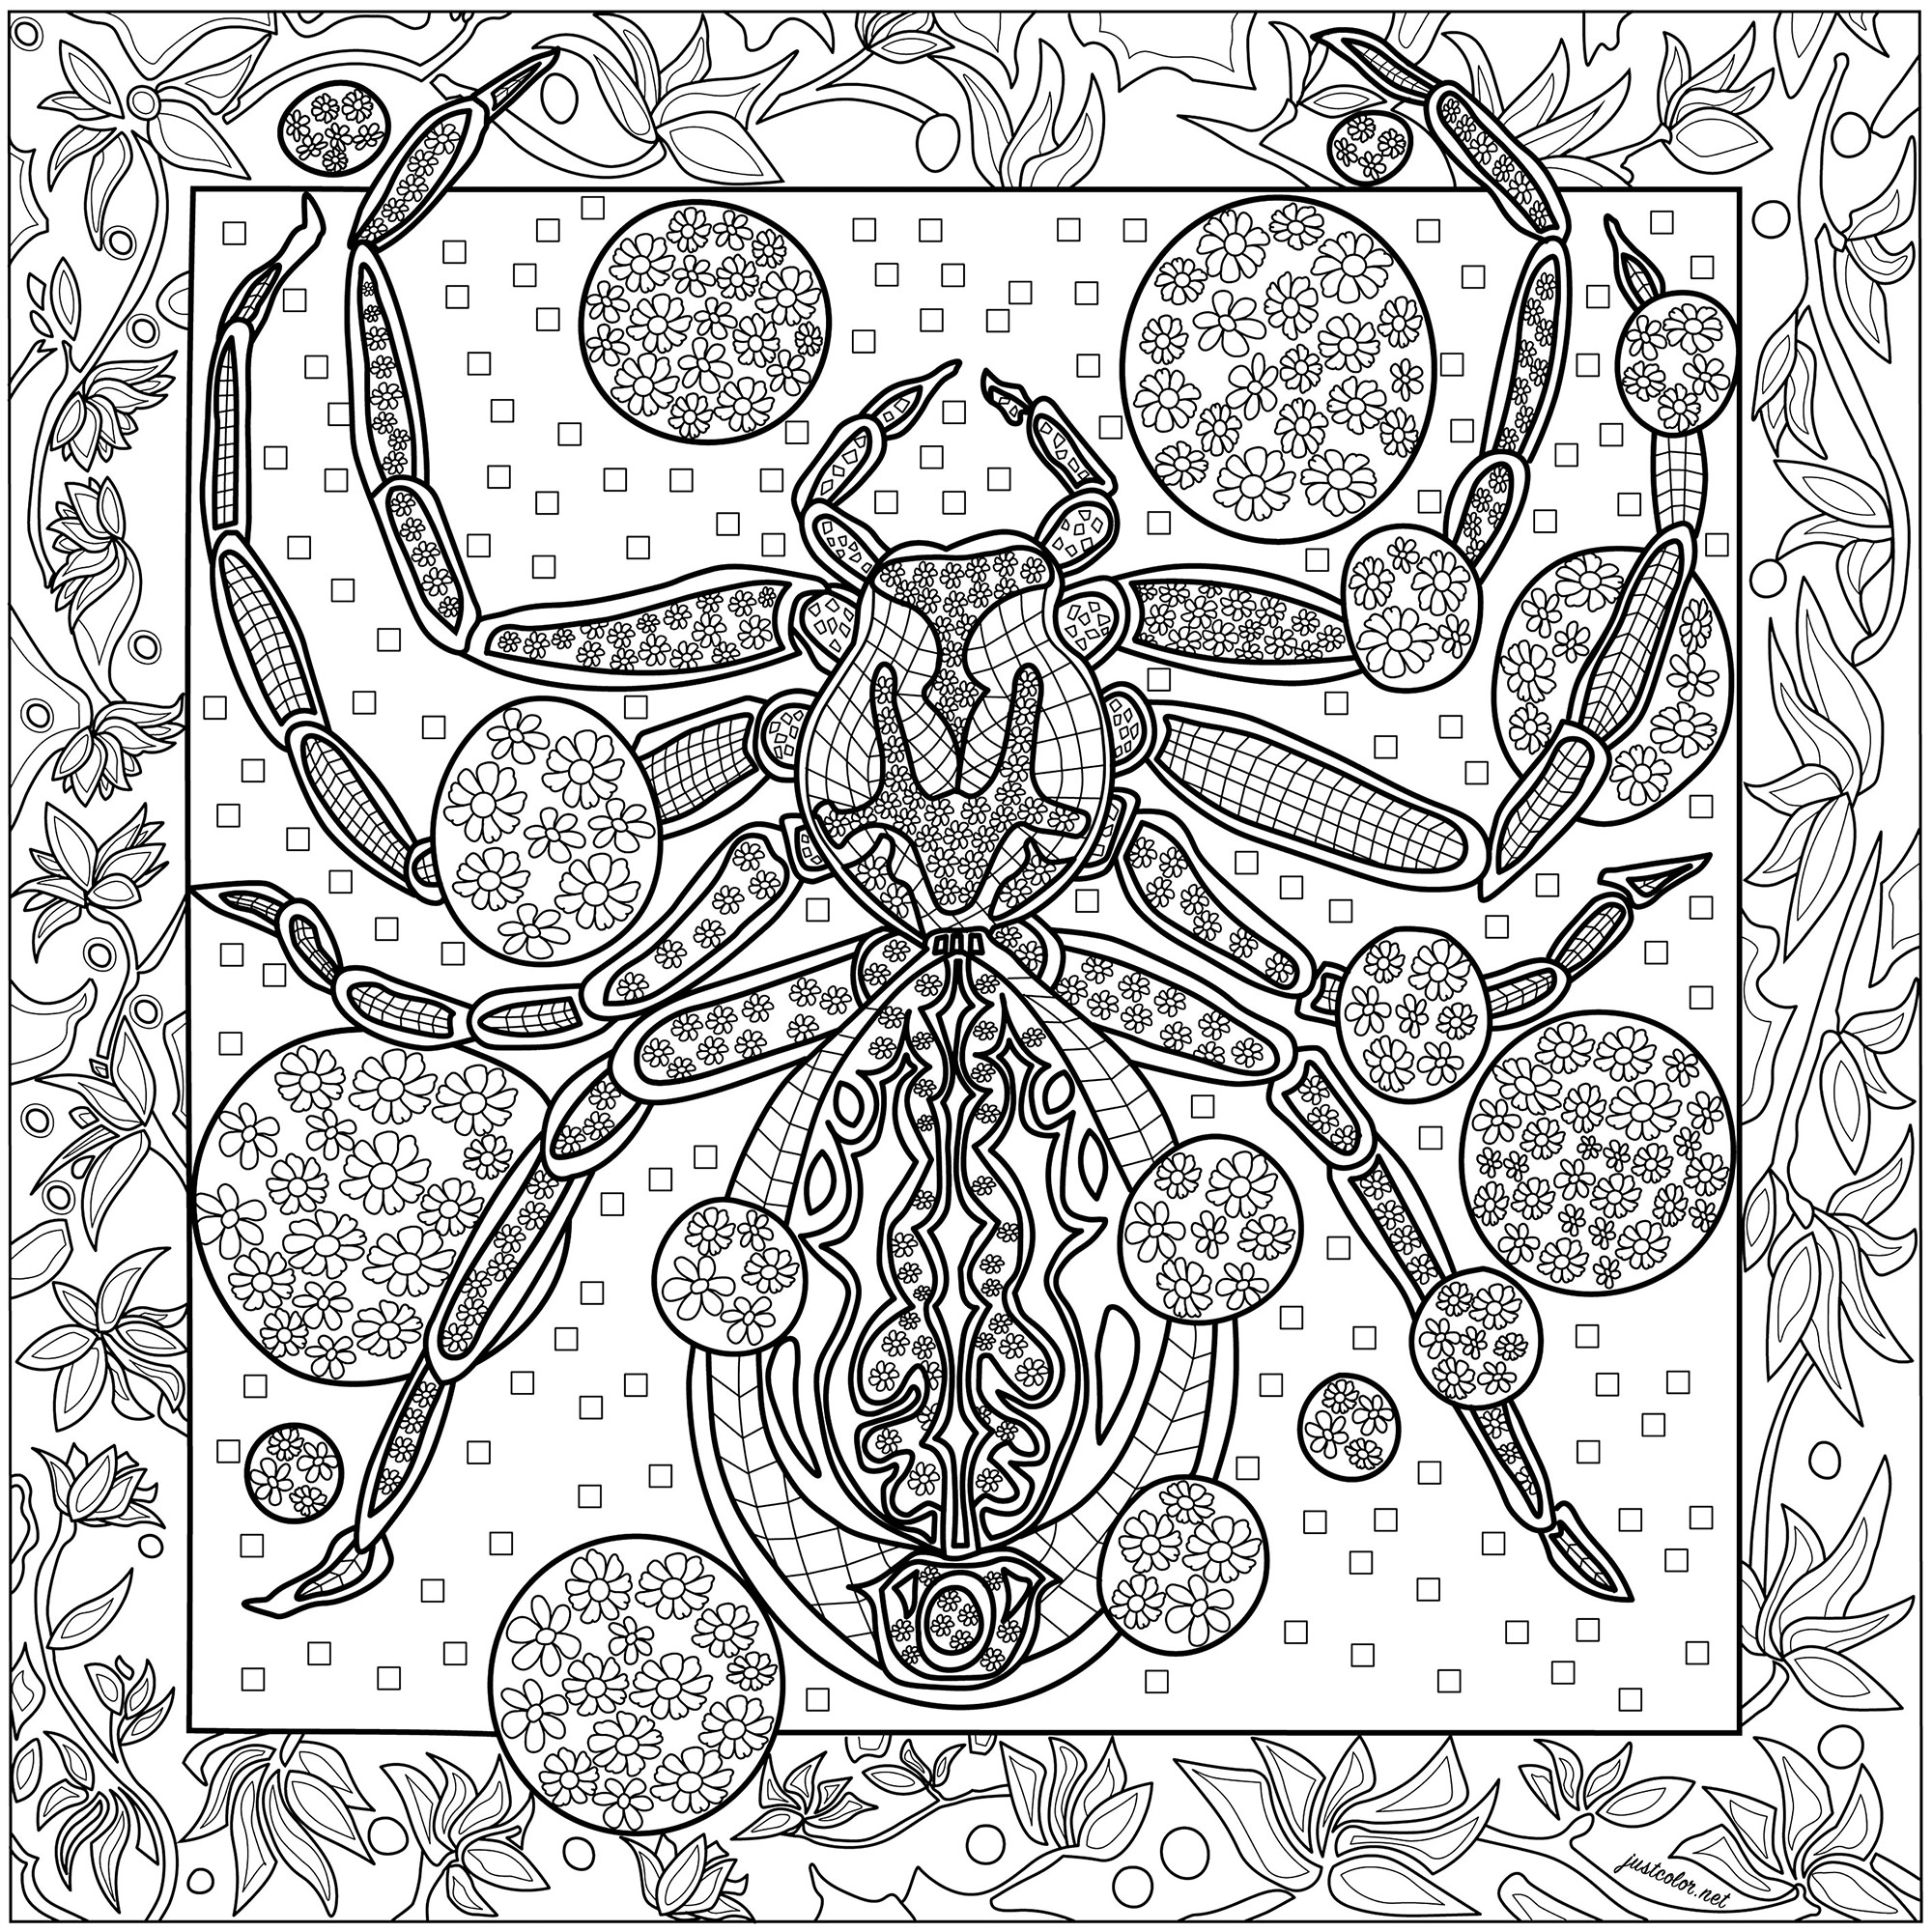 Magnifico ragno con incredibili disegni su uno sfondo ricco di dettagli.  Vi aspettano molte ore da colorare.., Artista : Morgan